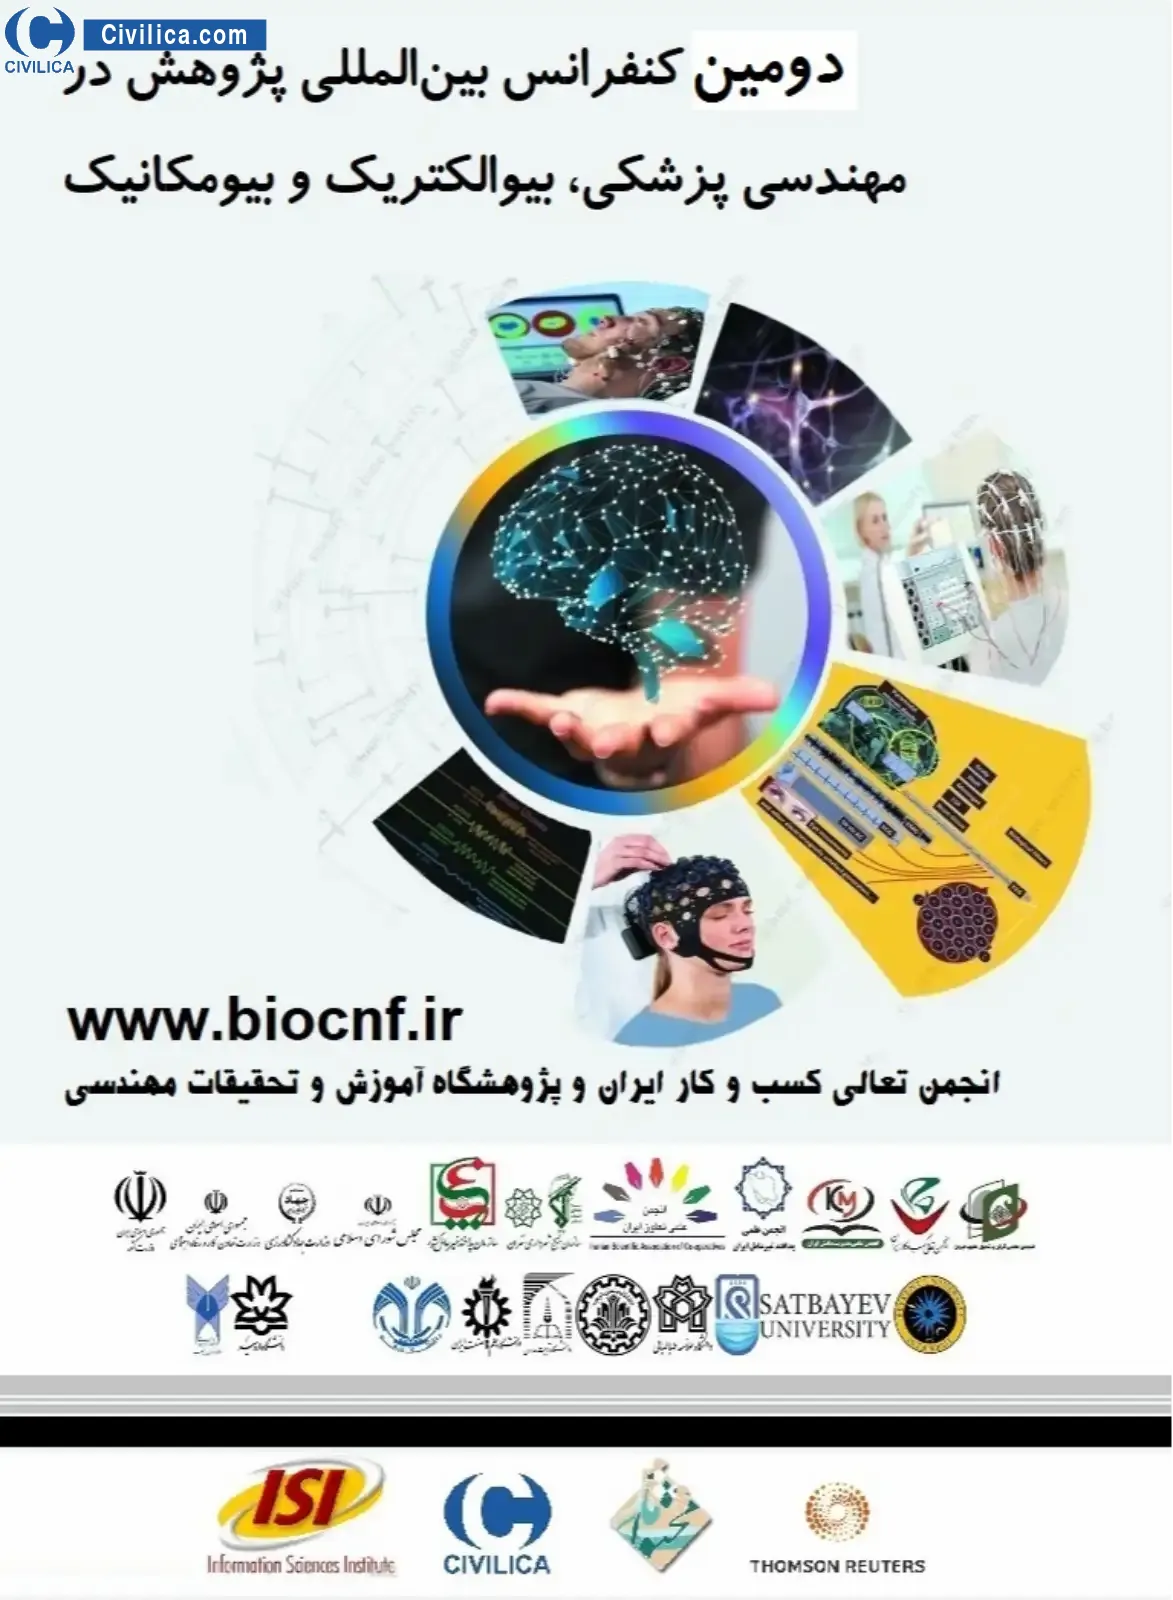 دومین کنفرانس بین المللی پژوهش در مهندسی پزشکی، بیوالکتریک و بیومکانیک